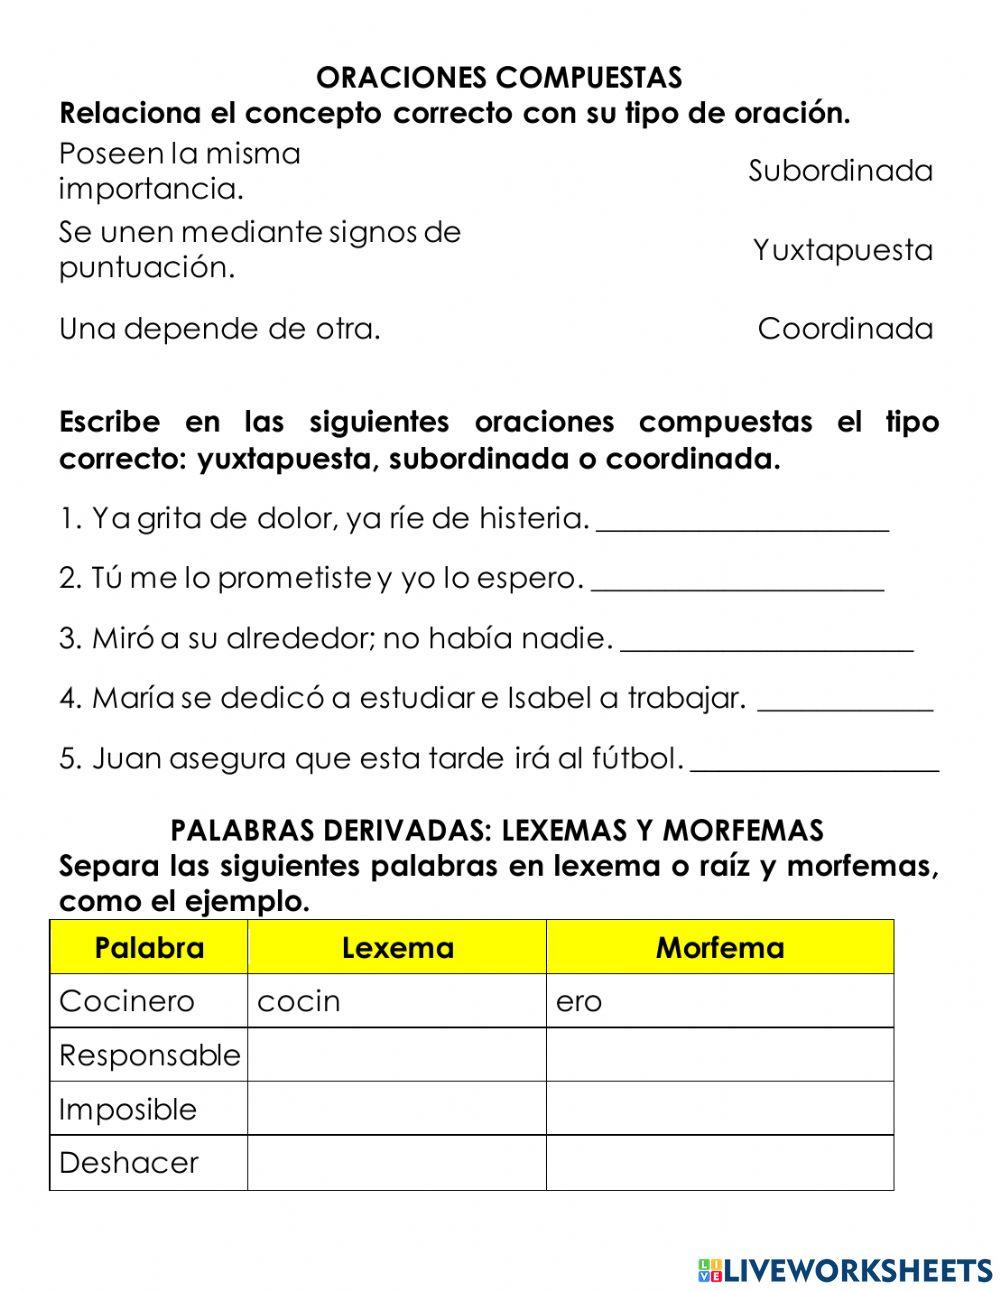 Repaso examen español 6 octubre